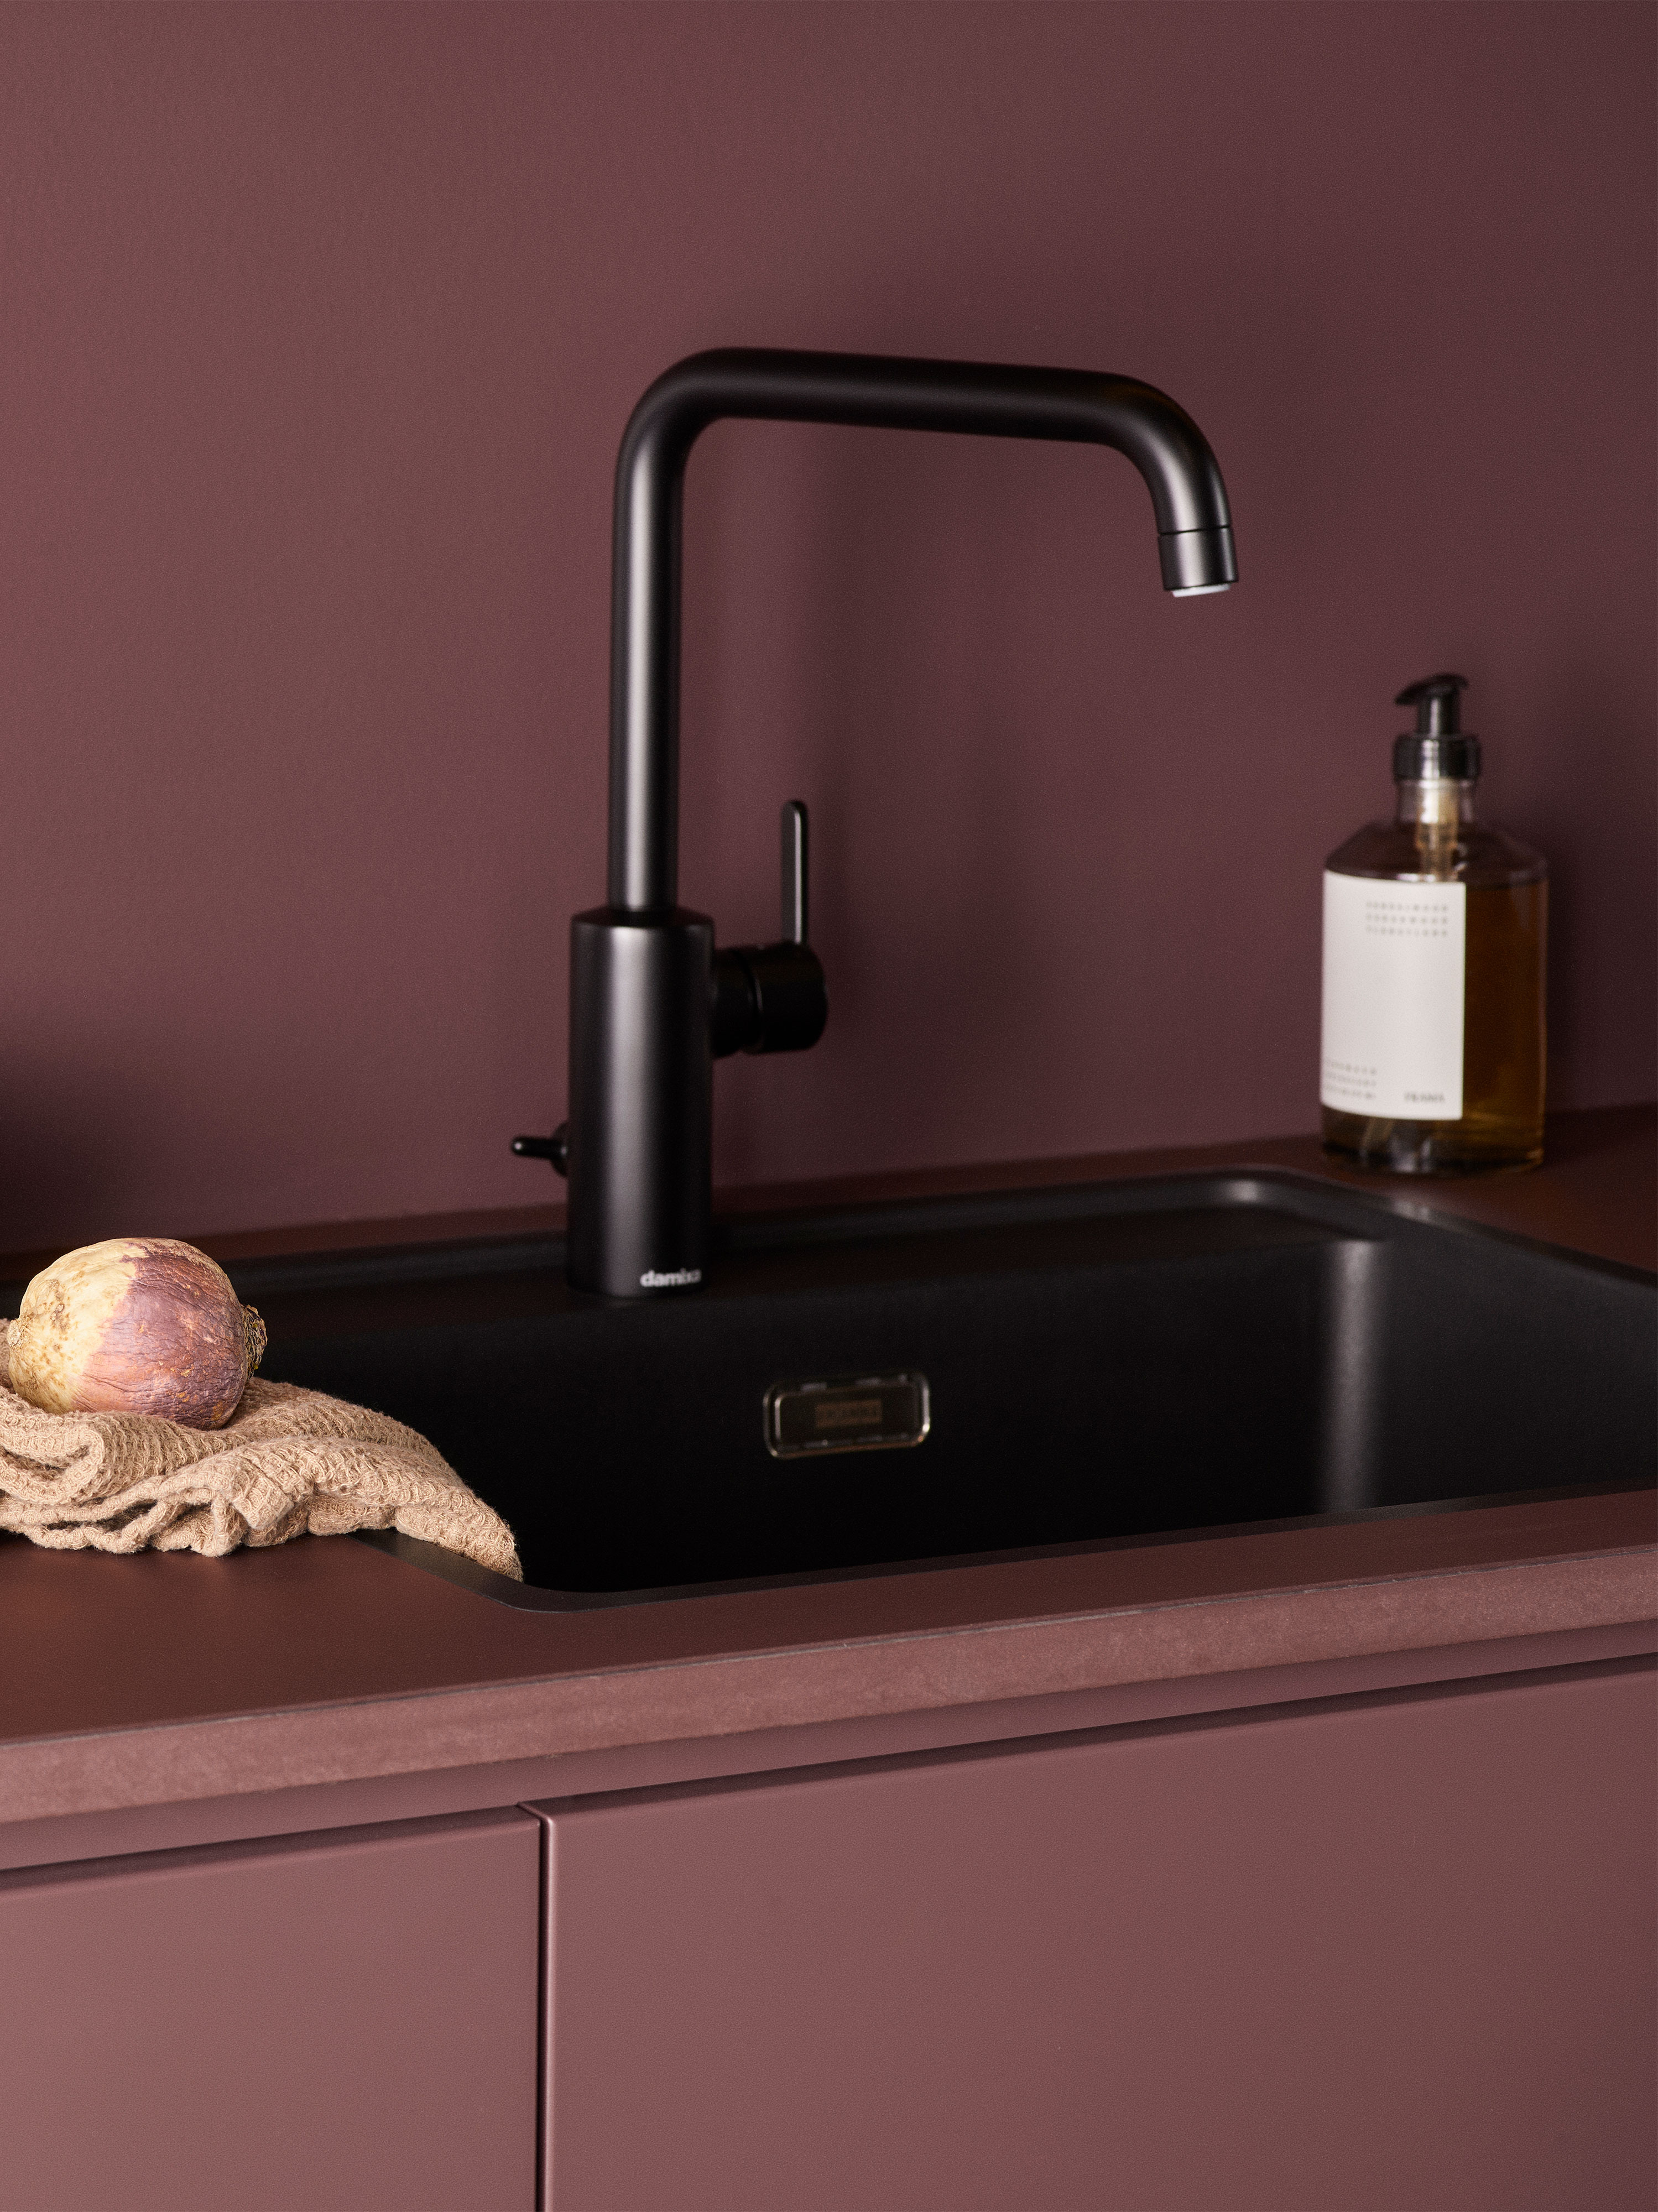 Black sink in an Epoq Trend Burgundy kitchen